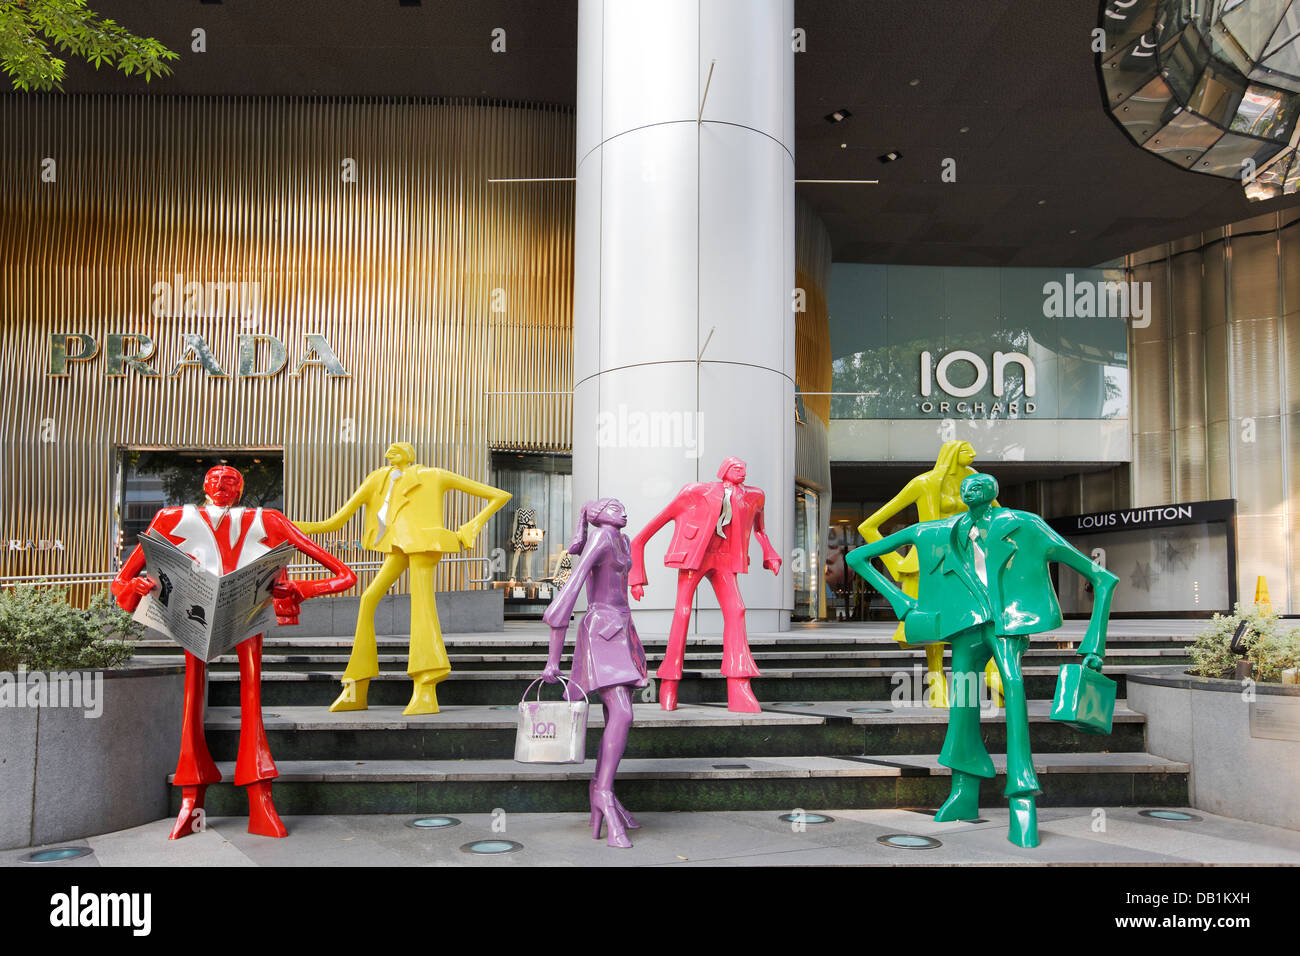 Persone urbane, scultura da scultore svizzero Kurt Laurenz Metzler. Orchard Road, Singapore. Foto Stock